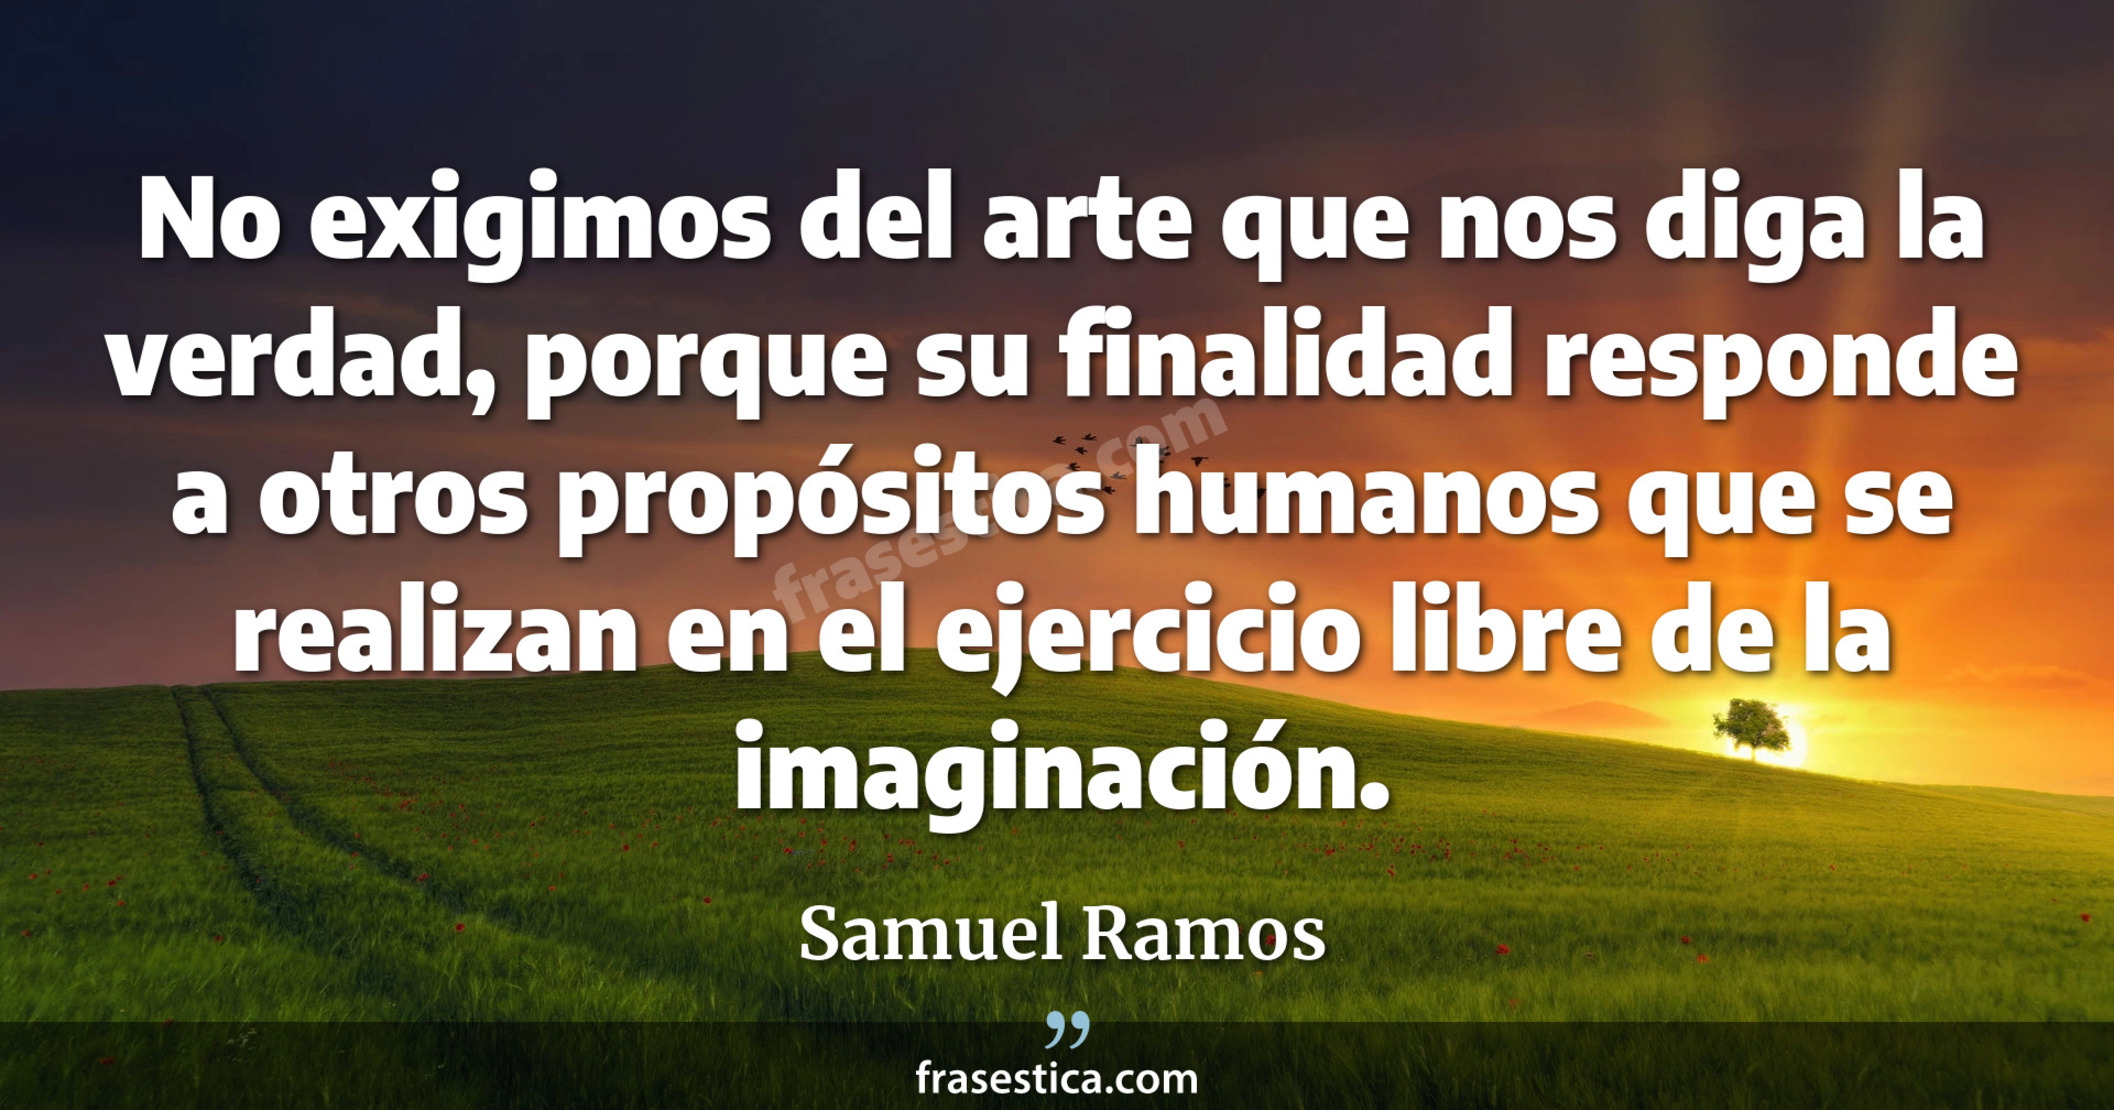 No exigimos del arte que nos diga la verdad, porque su finalidad responde a otros propósitos humanos que se realizan en el ejercicio libre de la imaginación. - Samuel Ramos